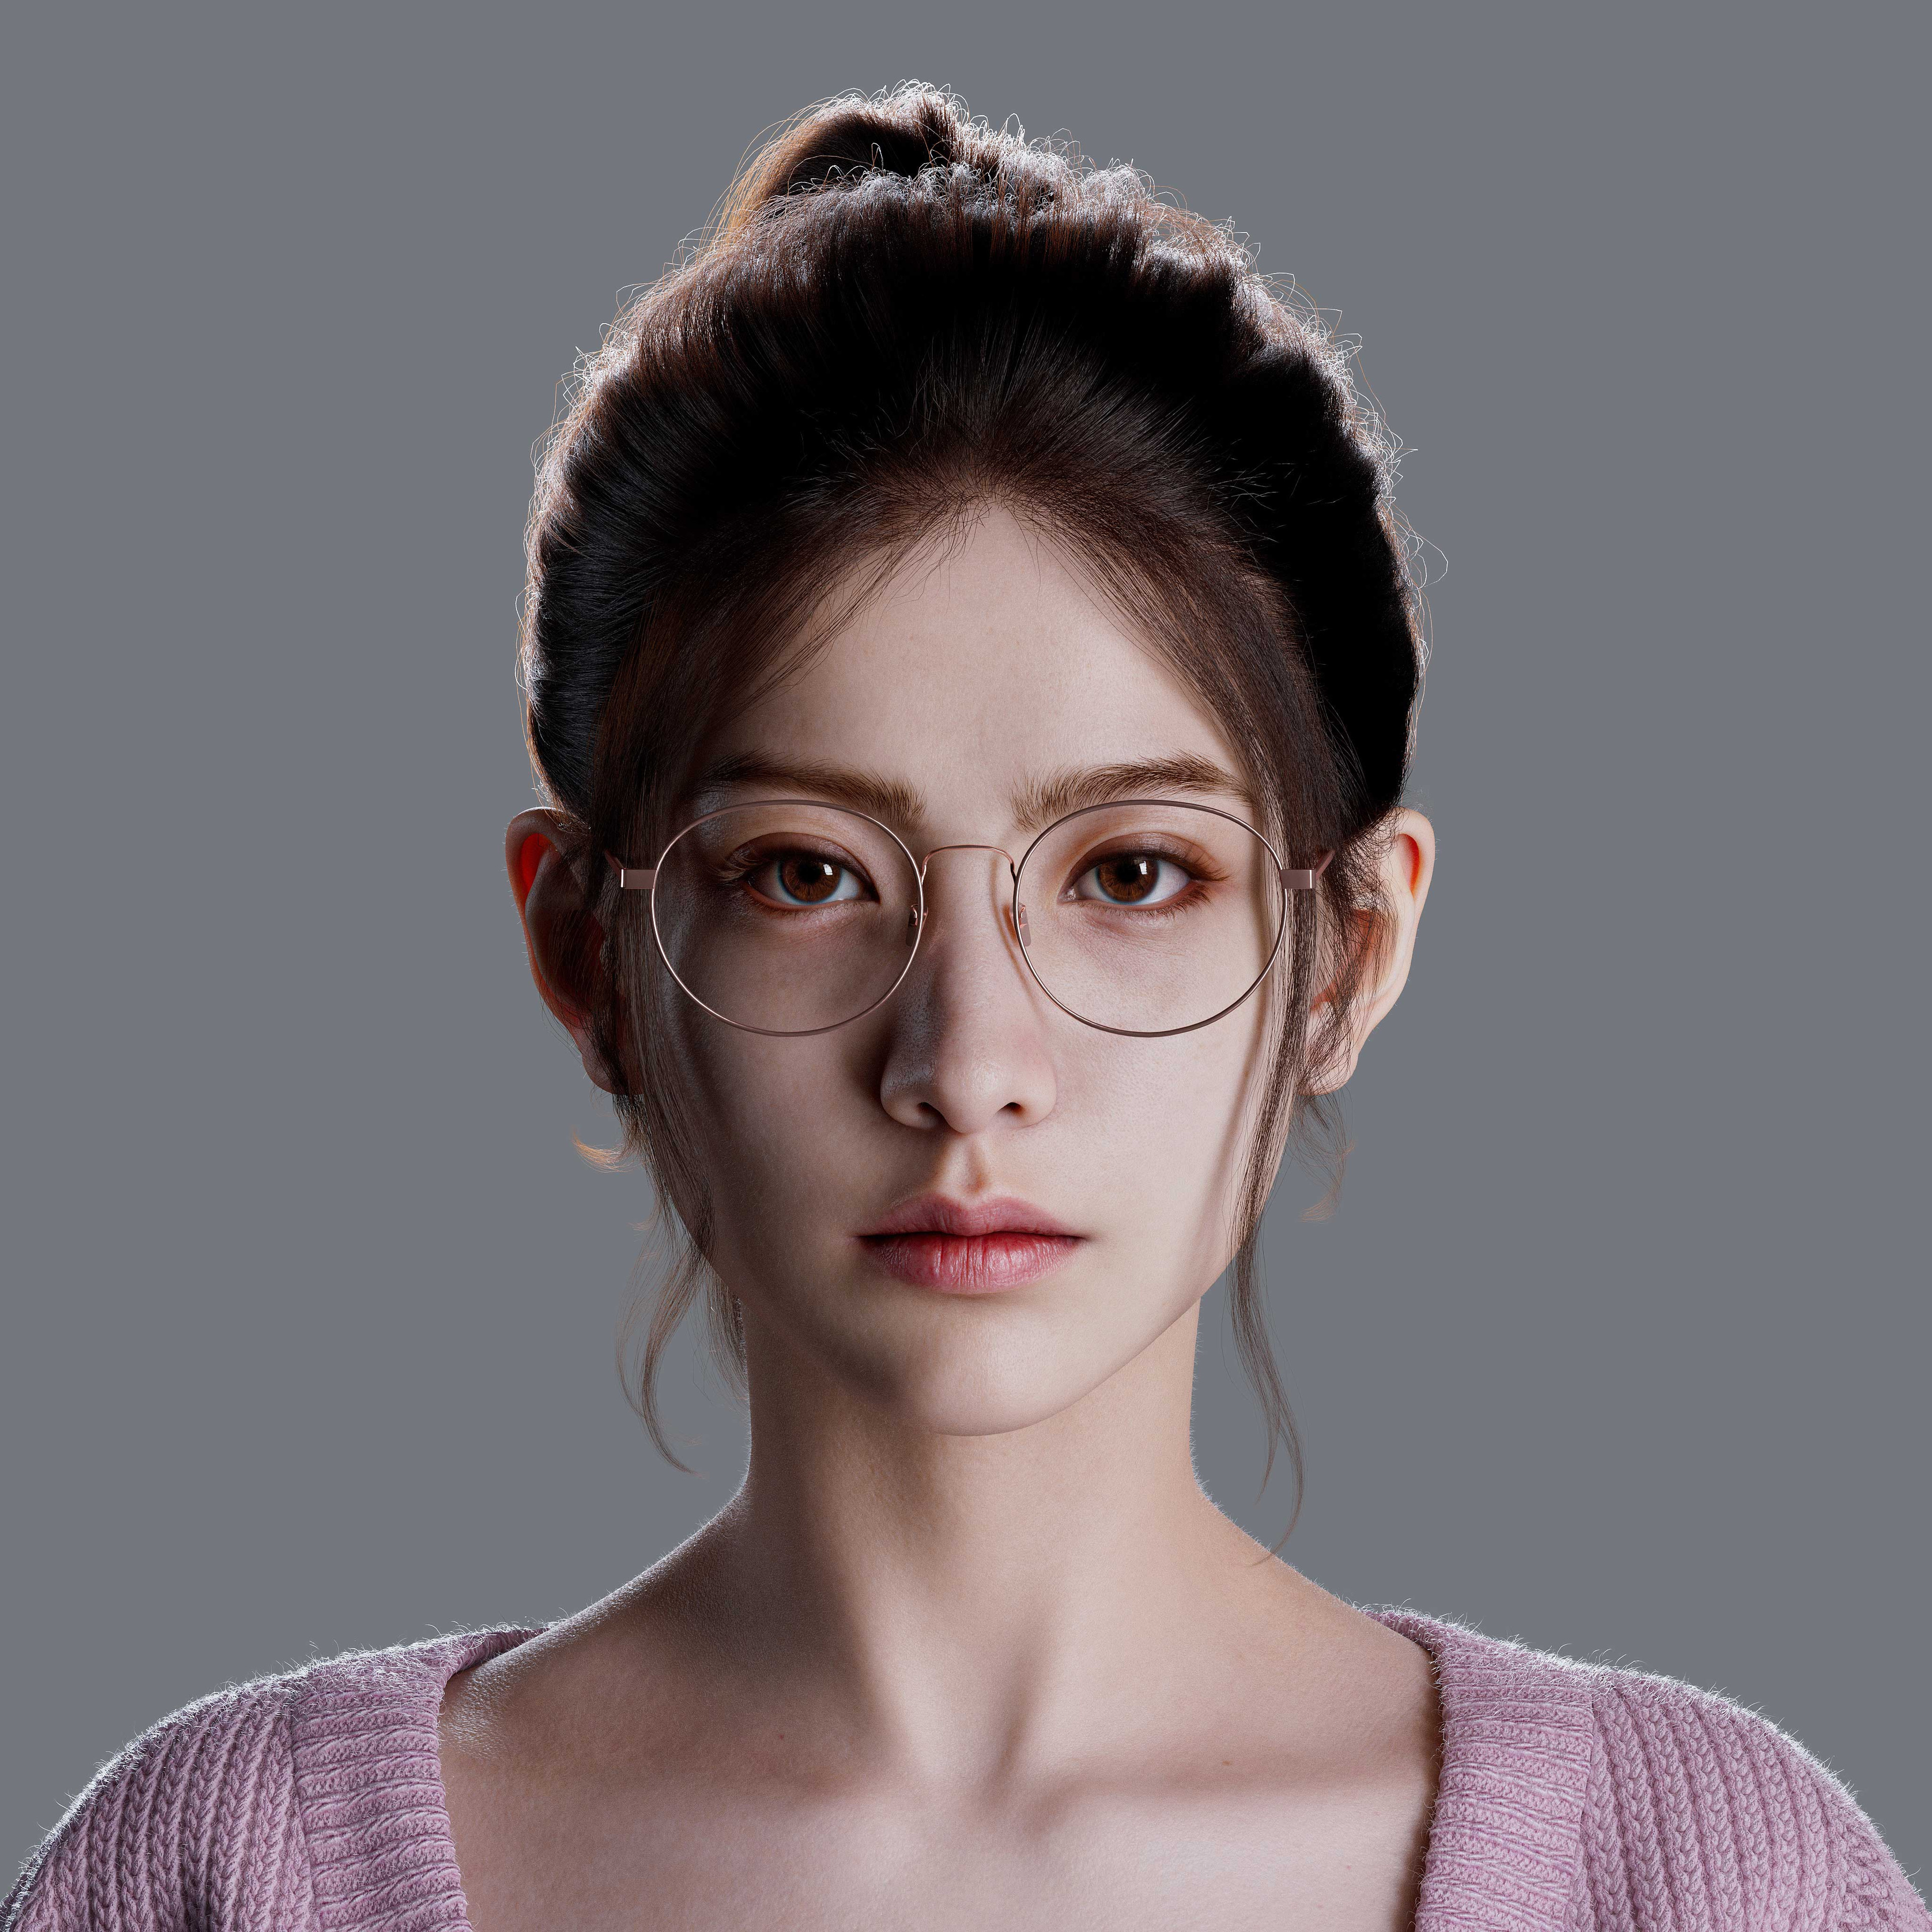 General 3840x3840 Forever (artist) CGI women Asian portrait glasses